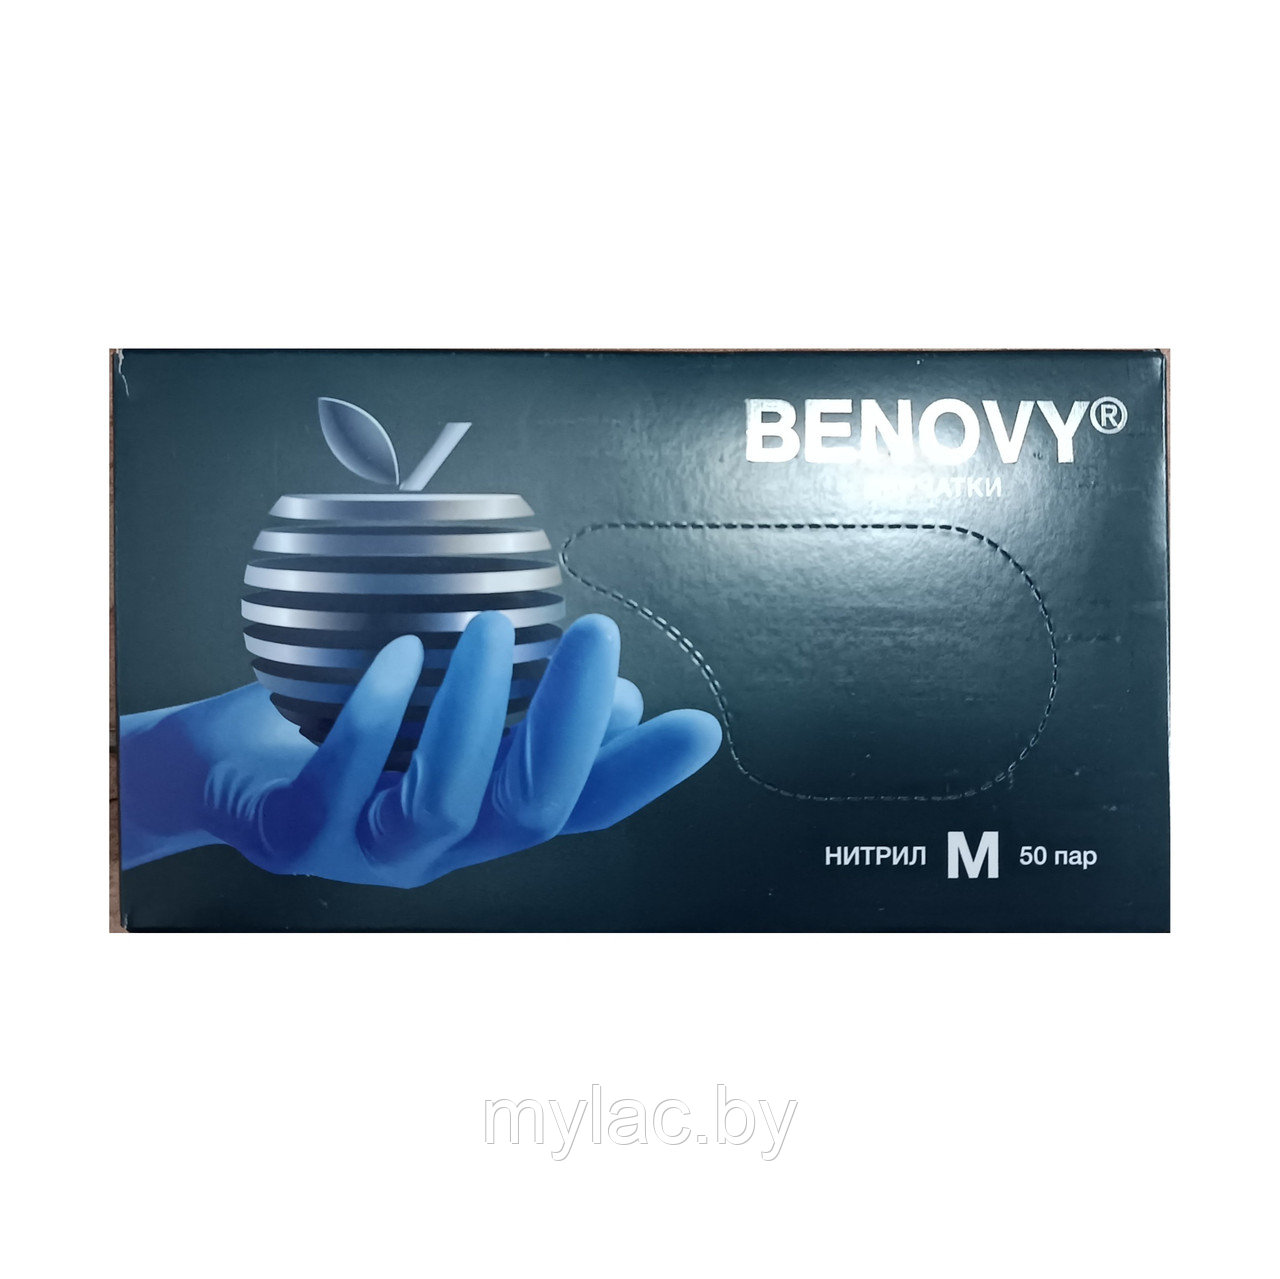 BENOVY Перчатки нитриловые сиренево-голубые текстурированные размер М 50 пар (100 шт.)